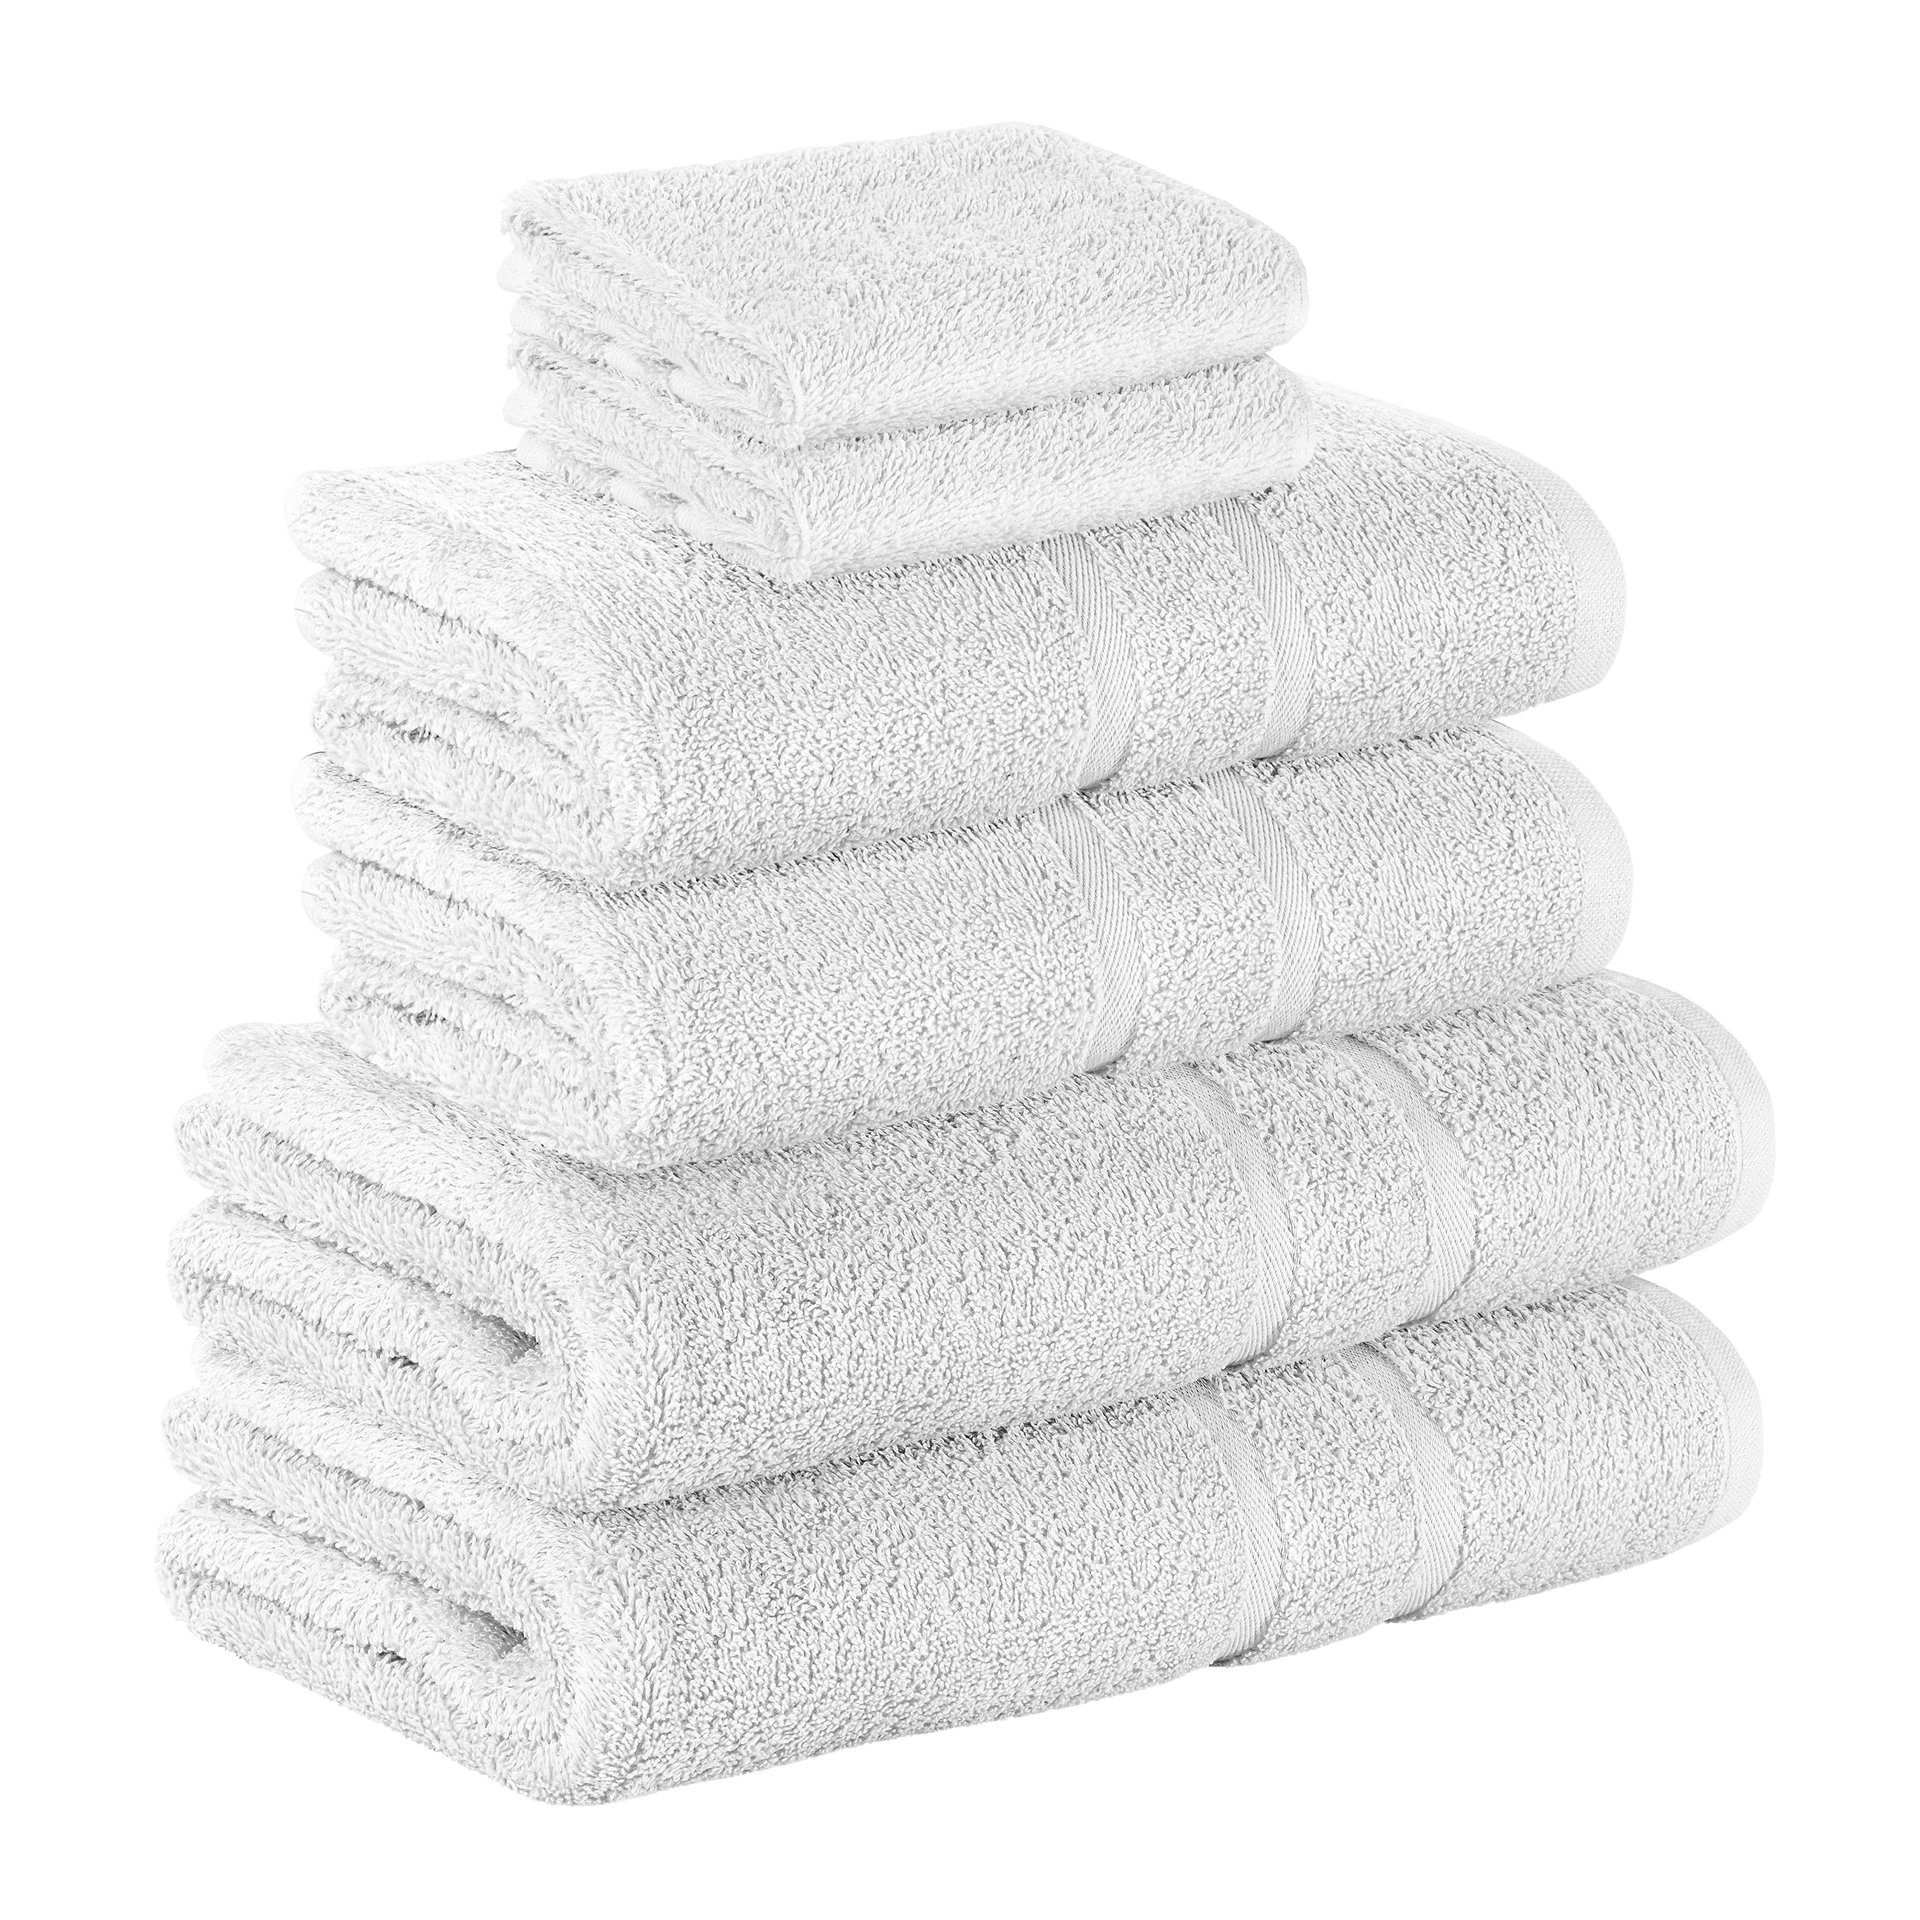 StickandShine Handtuch Set 2x Gästehandtuch 2x Handtücher 2x Duschtücher als SET in verschiedenen Farben (6 Teilig) 100% Baumwolle 500 GSM Frottee 6er Handtuch Pack, 100% Baumwolle 500GSM Weiß